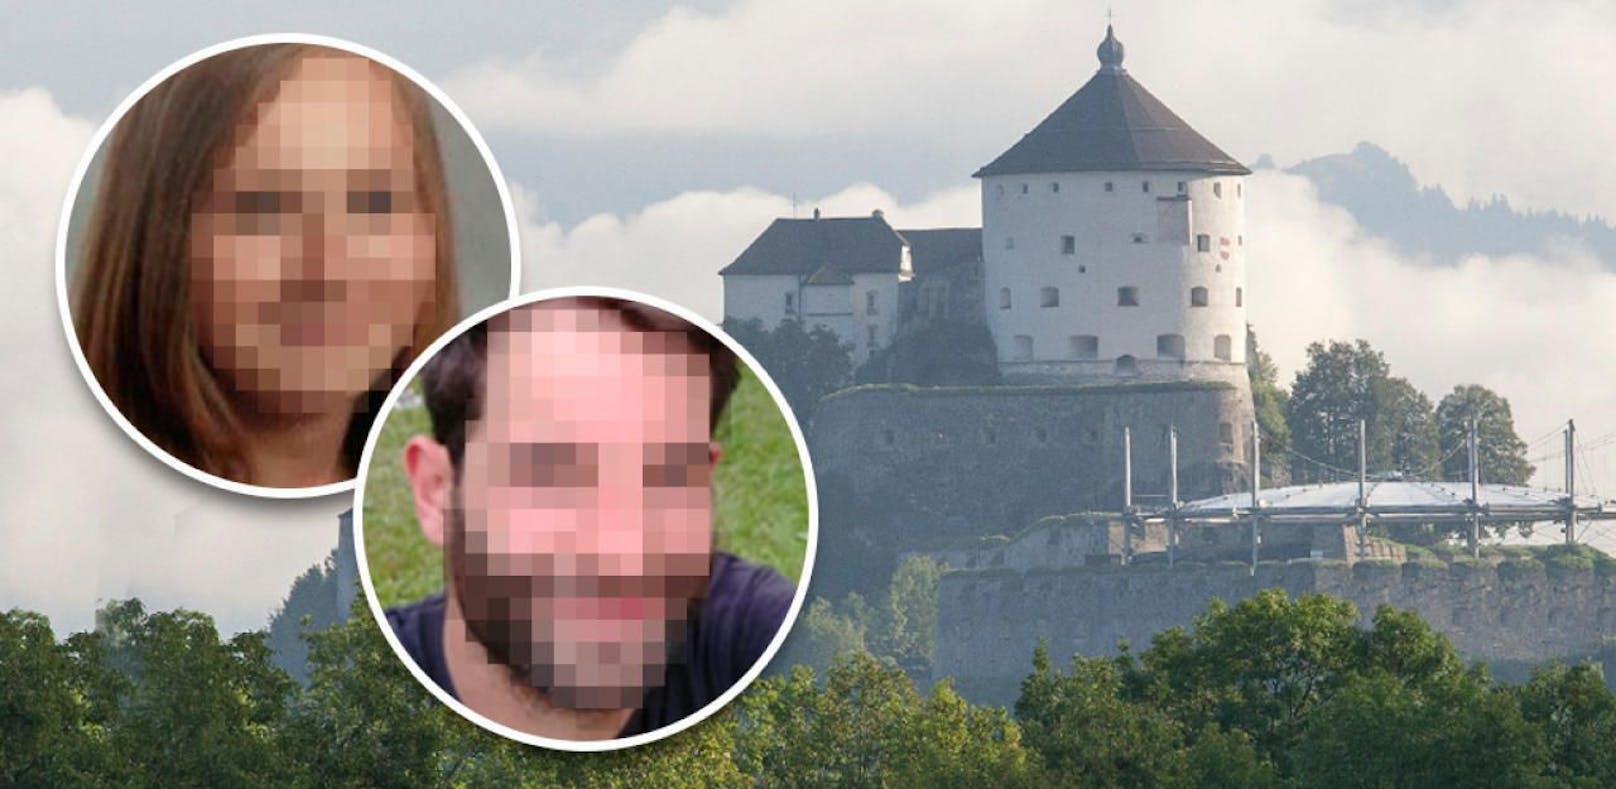 Leichenfunde in Kufstein: Die 20-Jährige und der 36-Jährige gelten seit Wochen als vermisst. Ob es sich bei ihnen um die Toten handelt ist noch unklar.